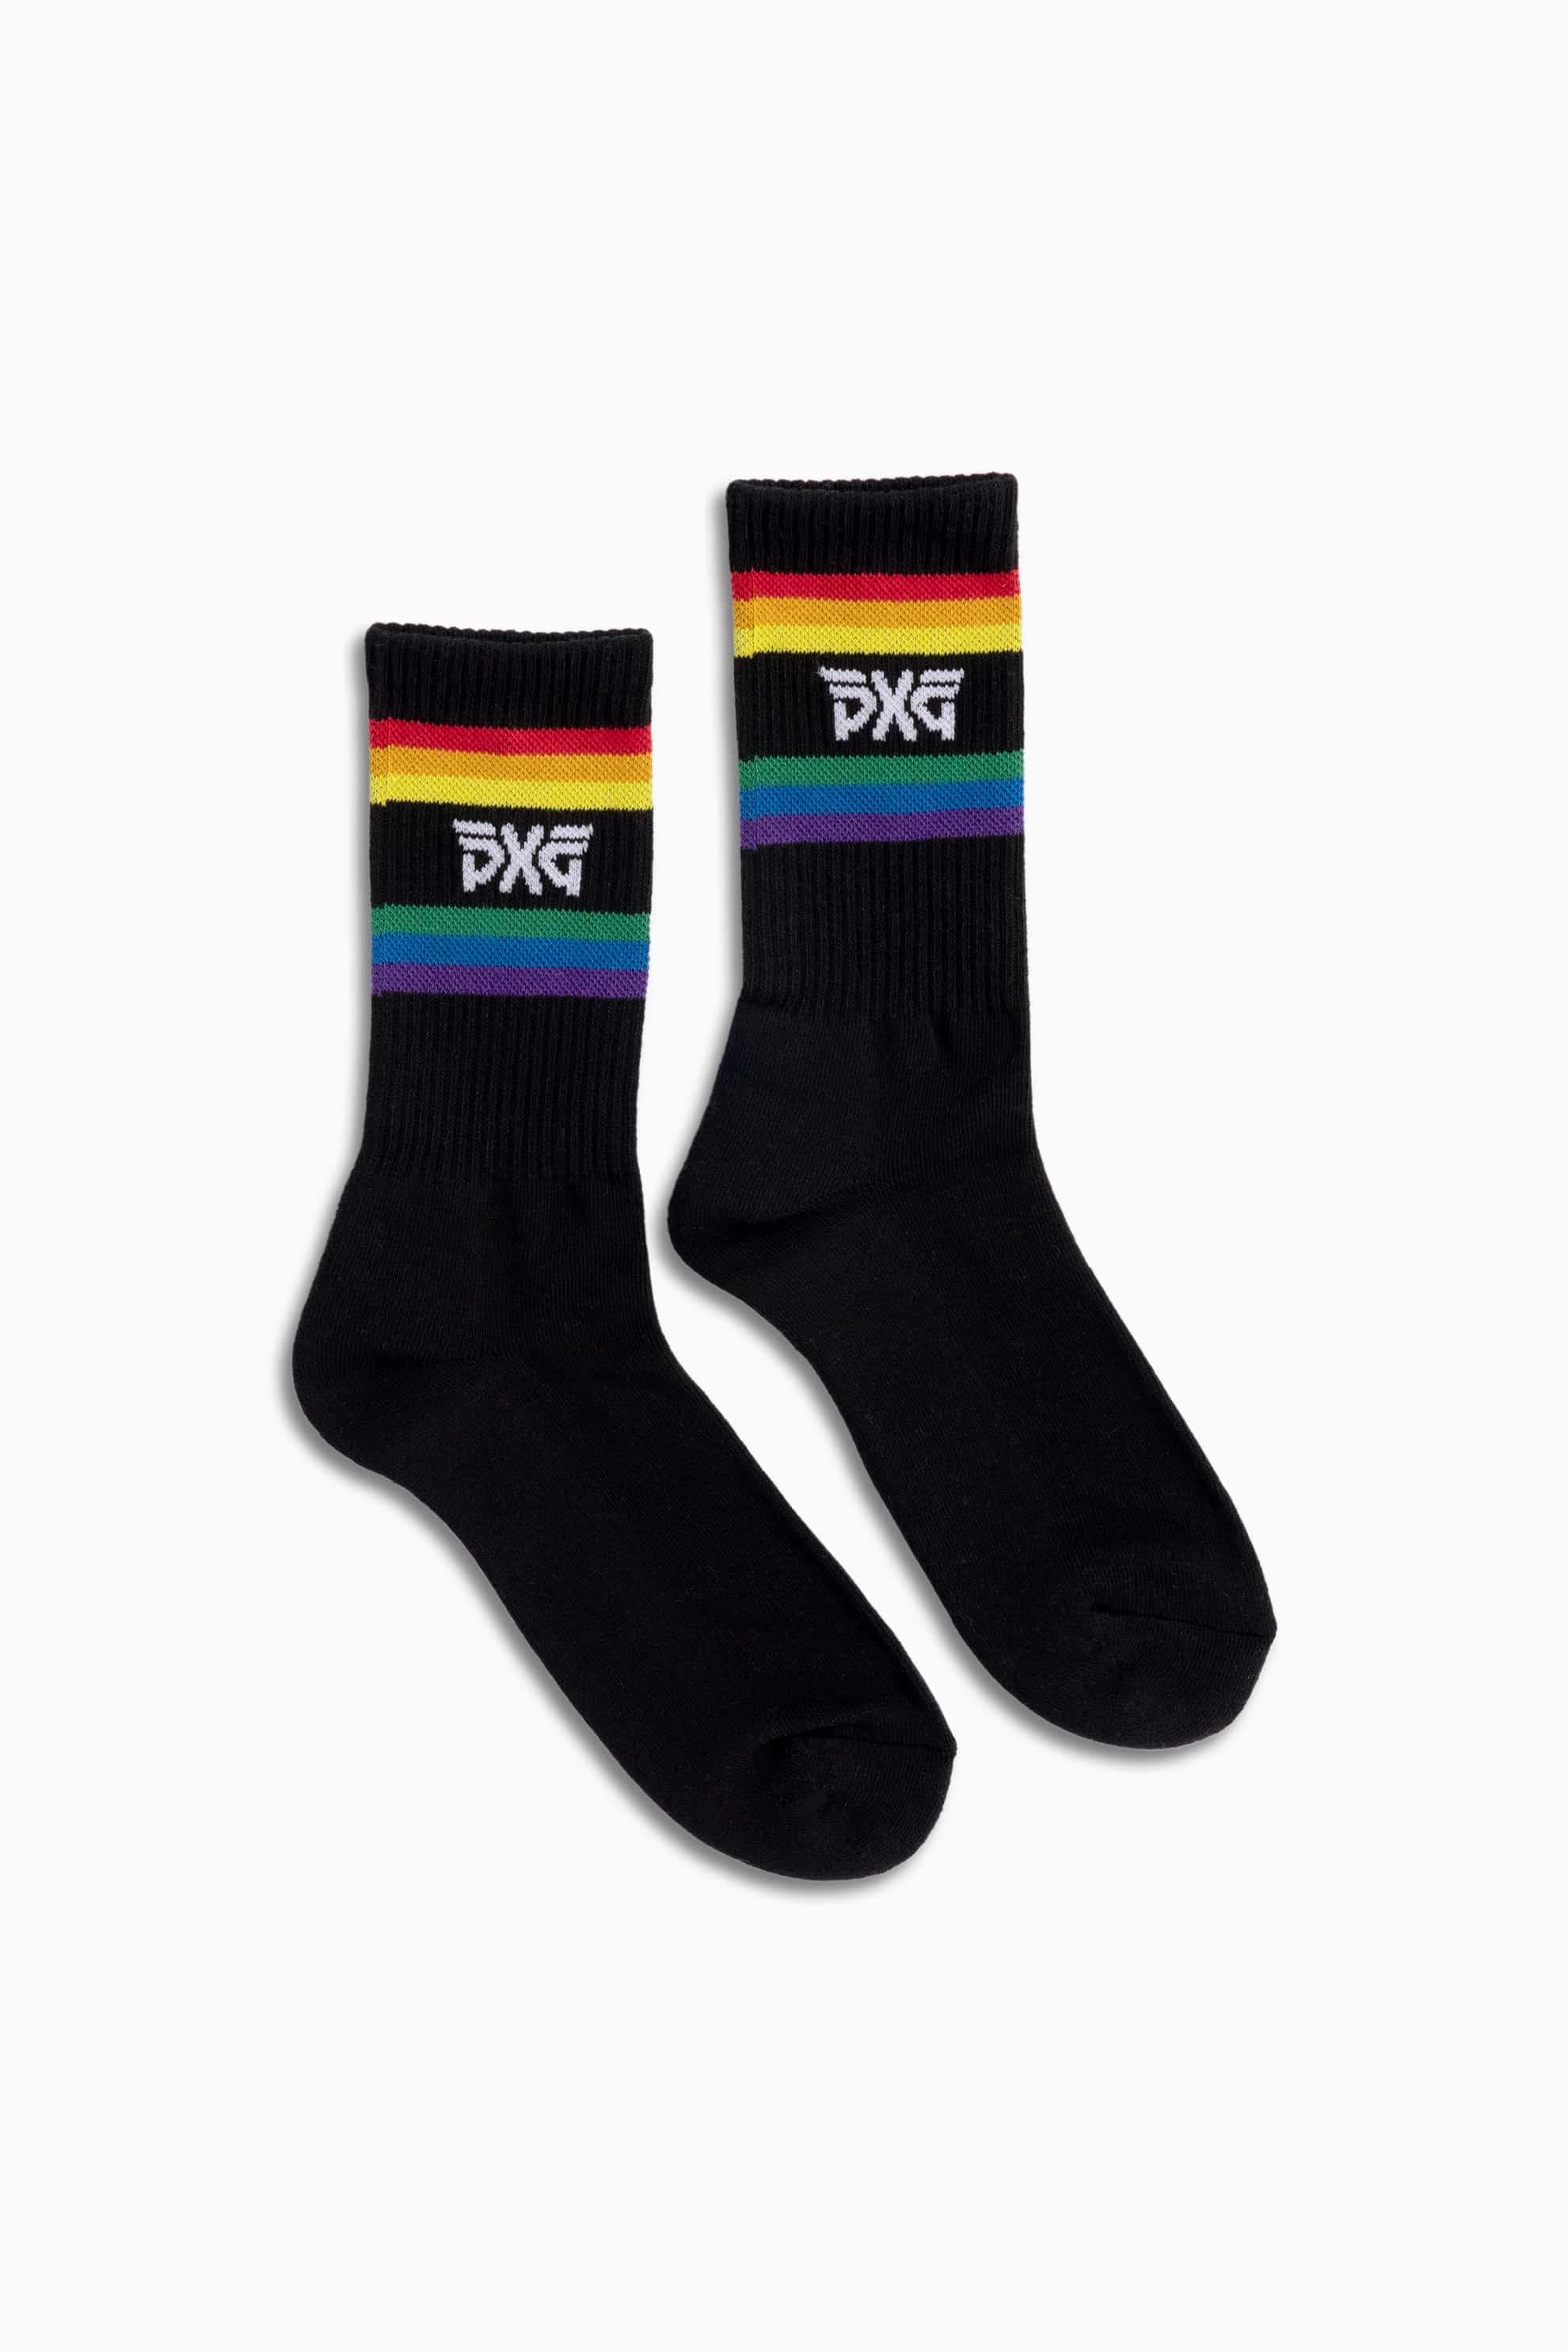 Buy Men's Pride Crew Socks | PXG